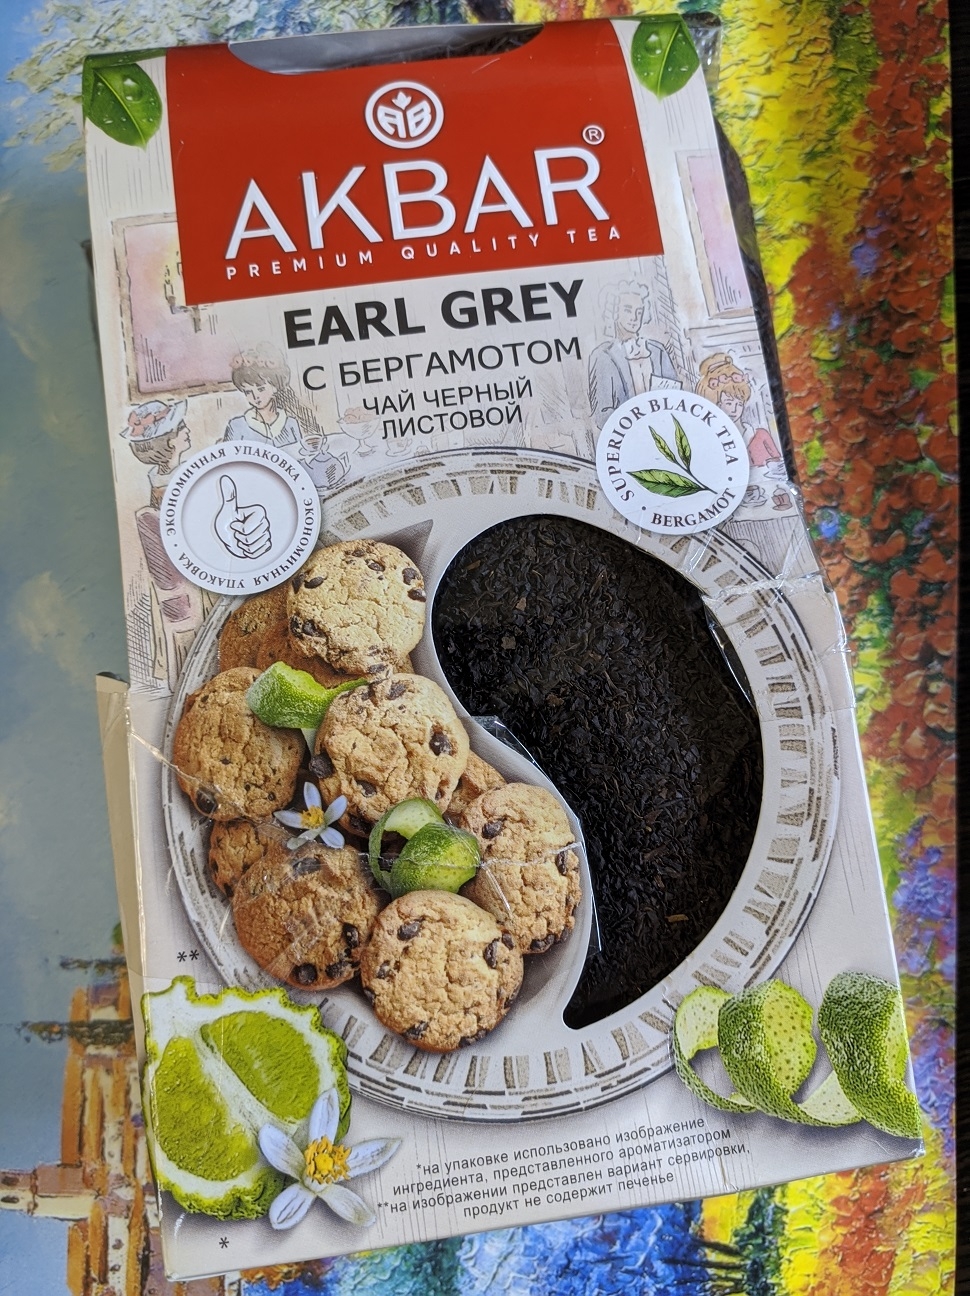 Чай черный листовой Akbar "Корзинка" Earl Grey, 500 г - Вкусный эрл грей от Акбар